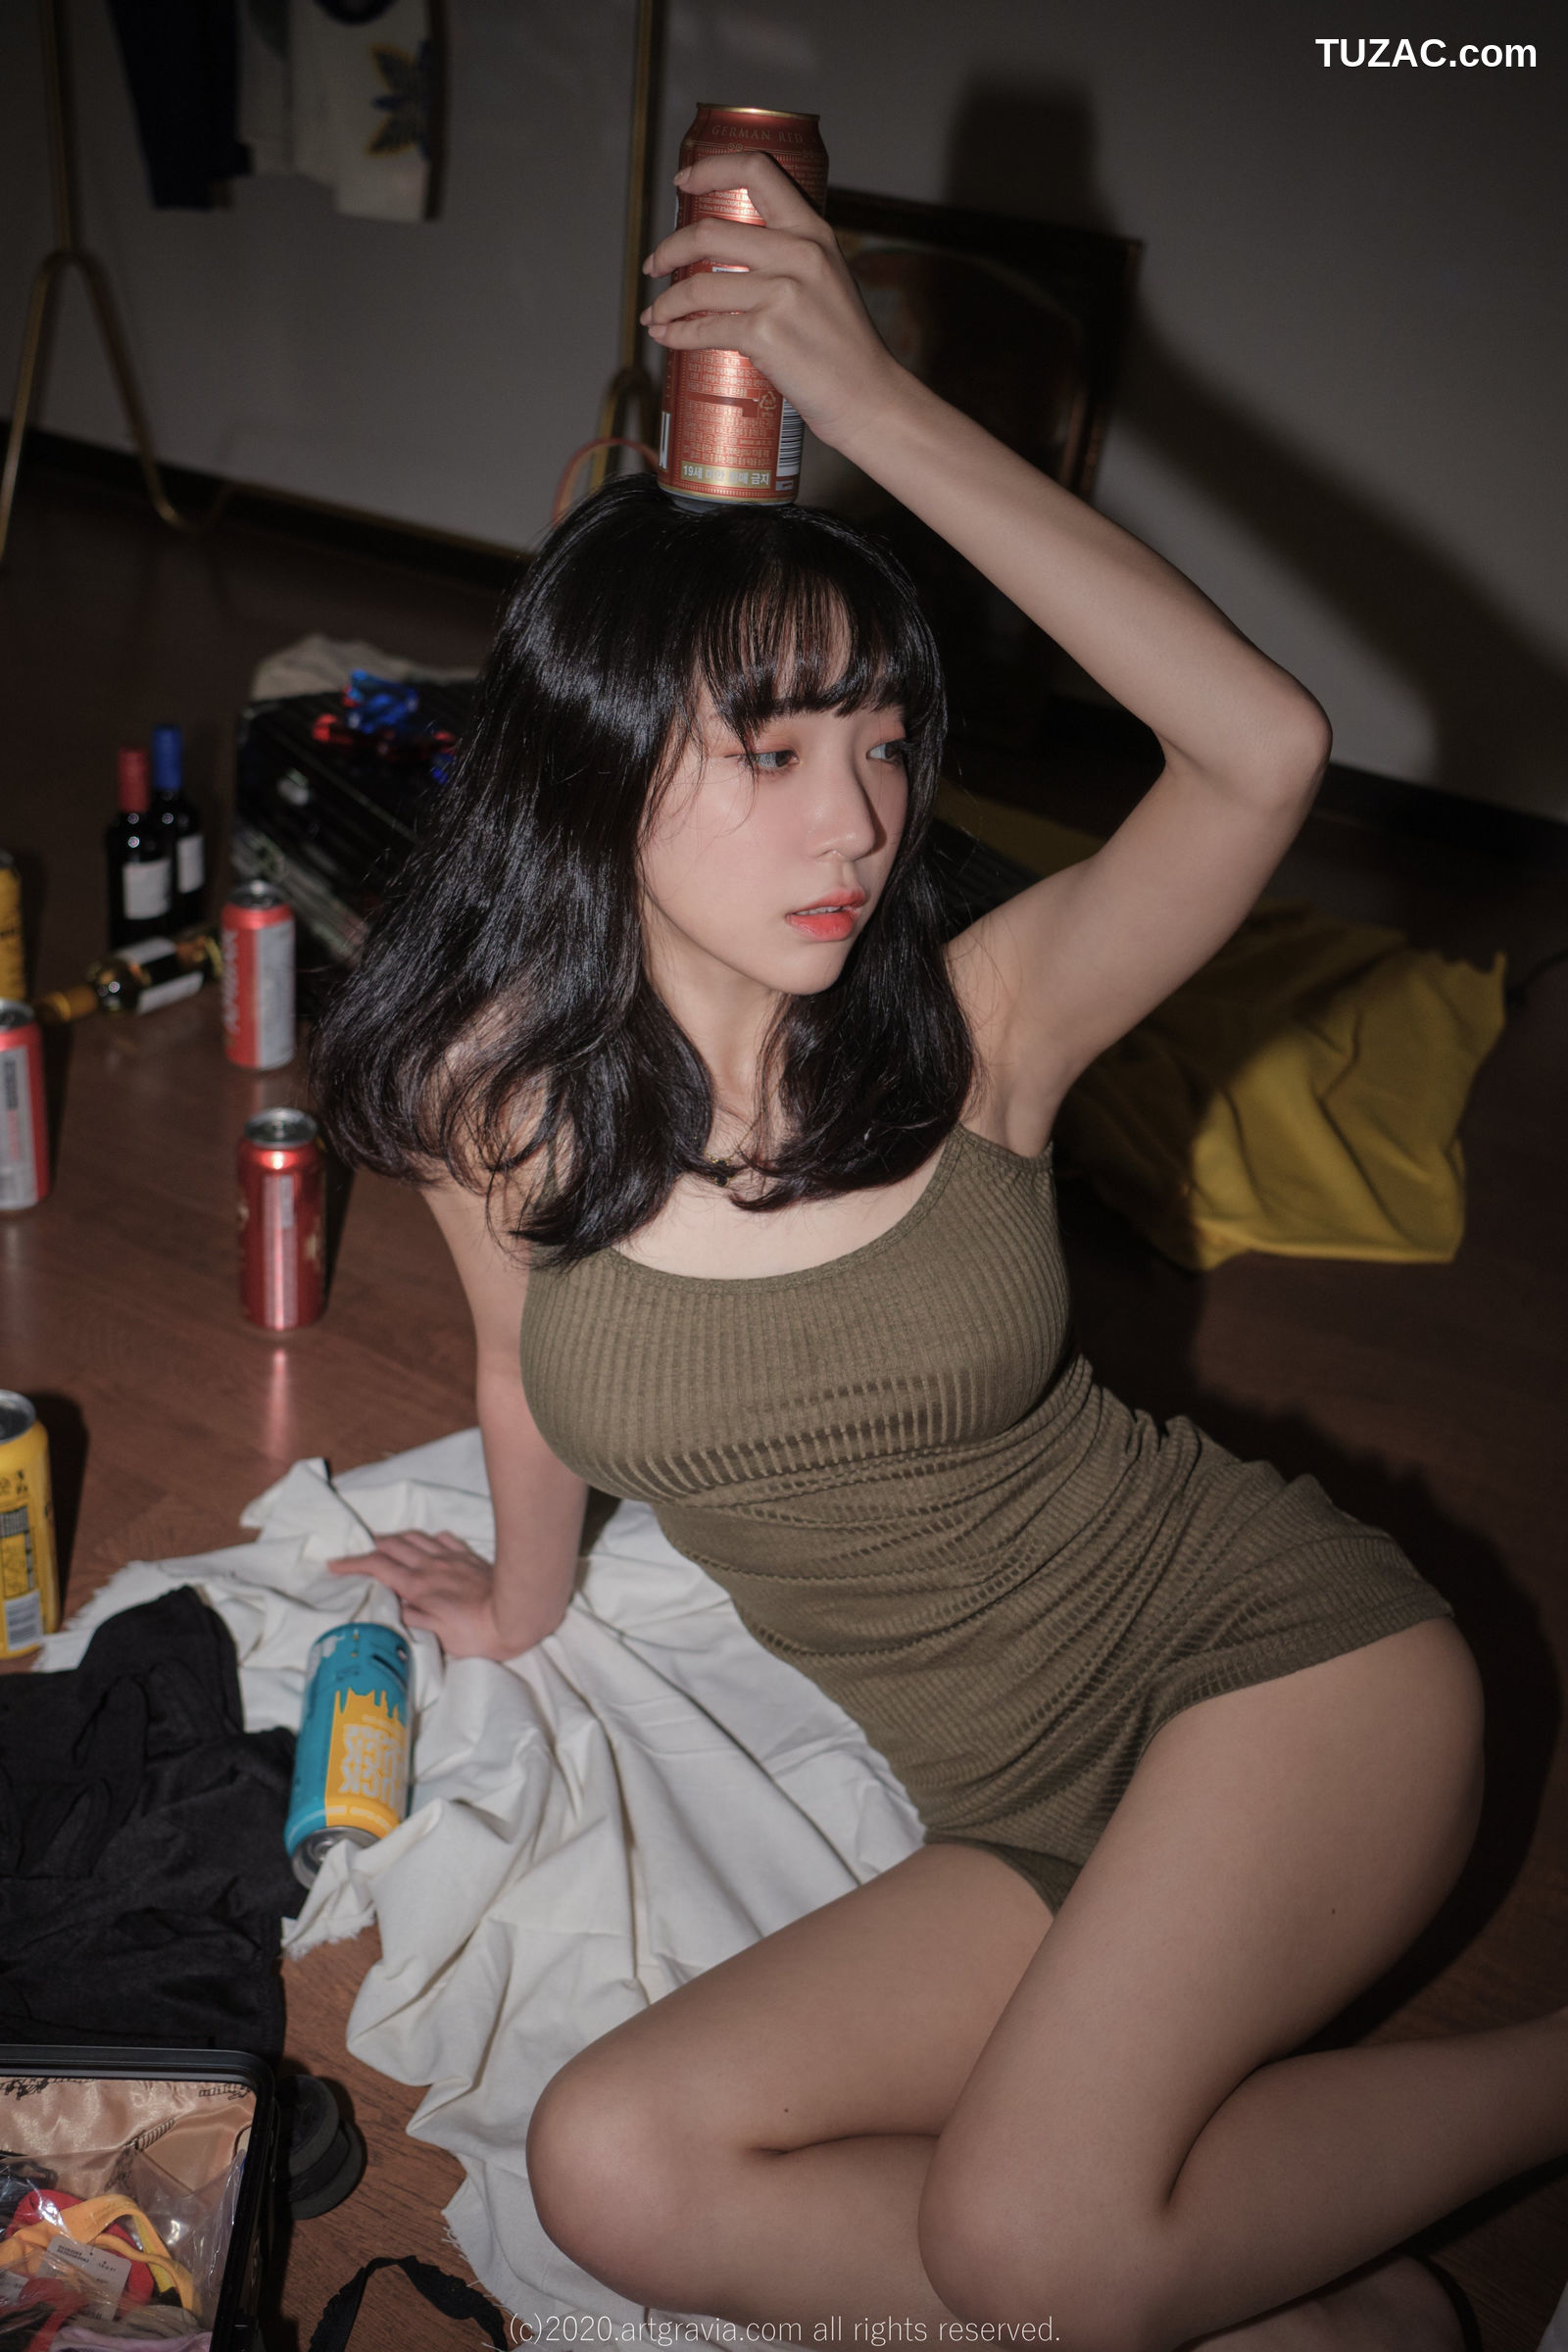 姜仁卿-ARTGRAVIA-190-巨乳吊带裙少女-Inkyung